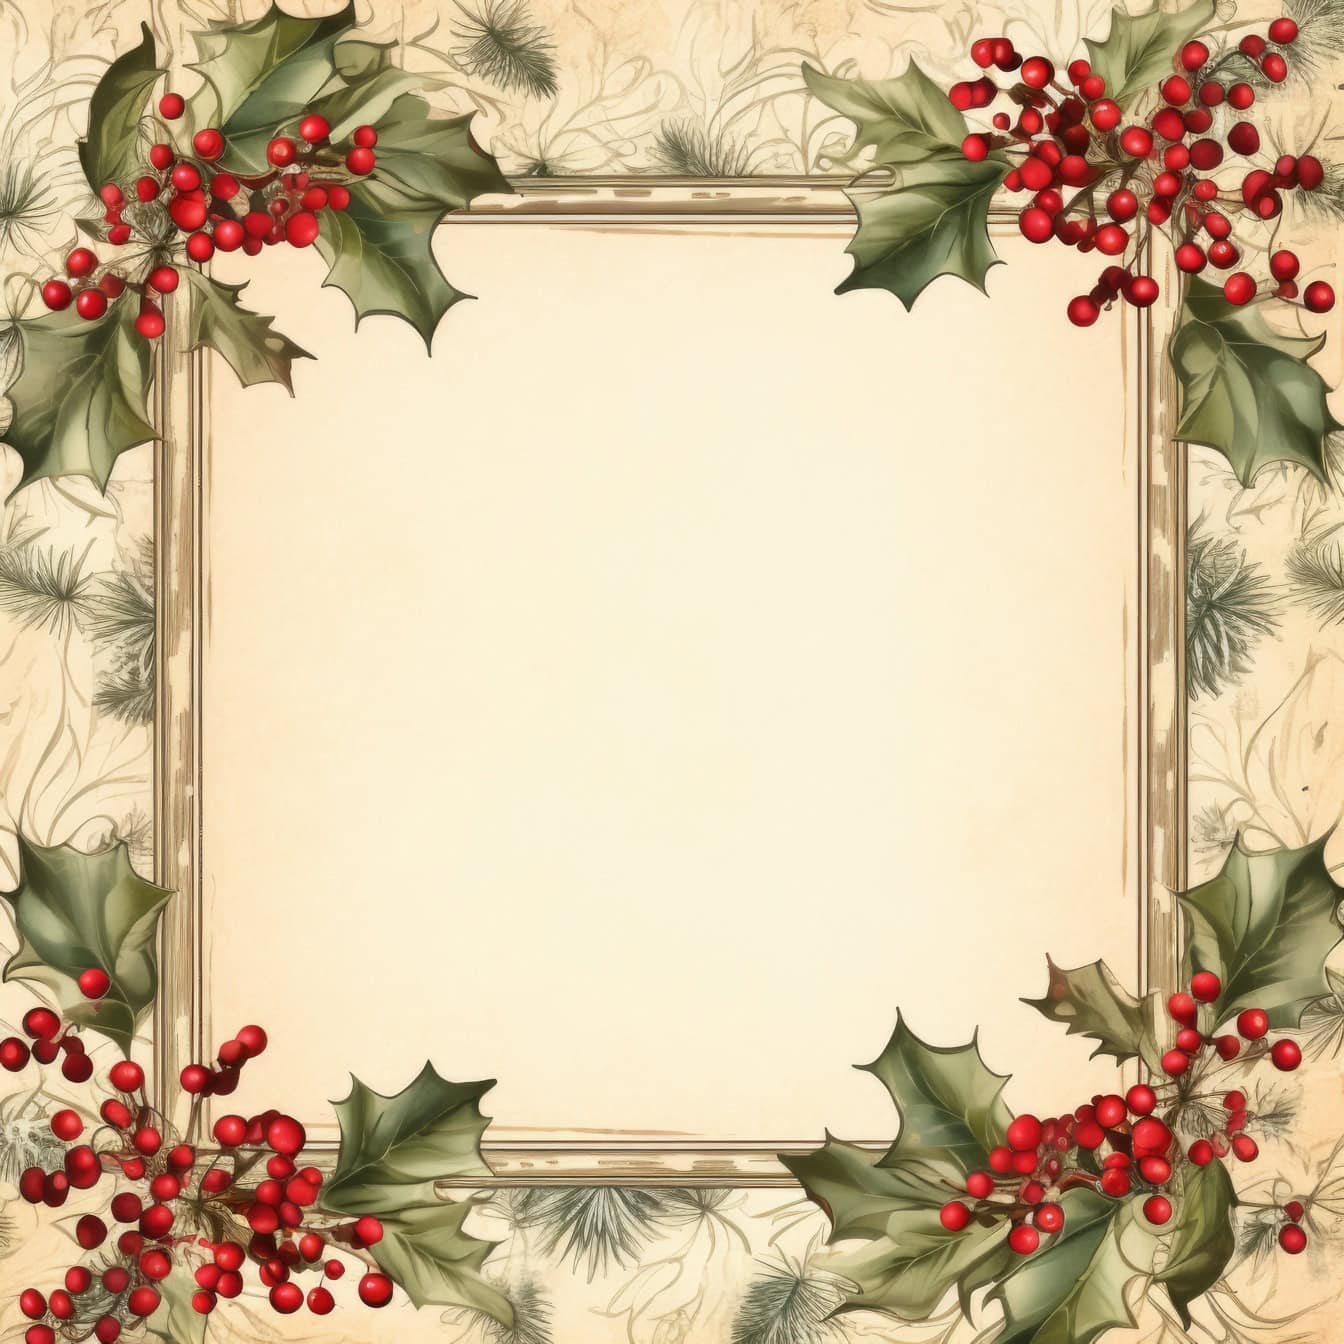 Plantilla de tarjeta de felicitación de Navidad en estilo antiguo con marco cuadrado con bayas rojas y hojas